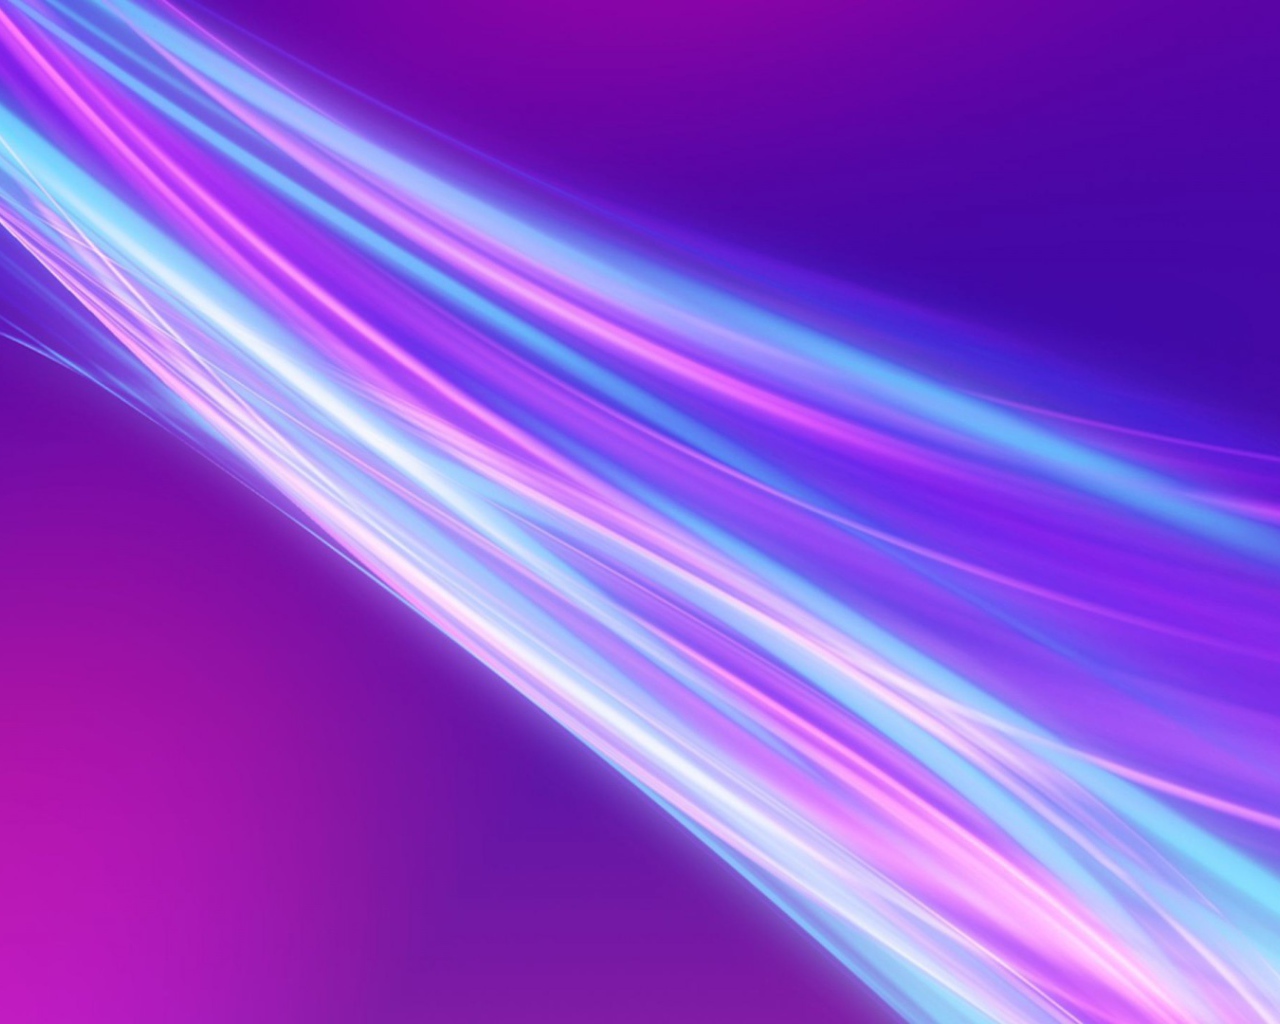 Фиолетовые волны